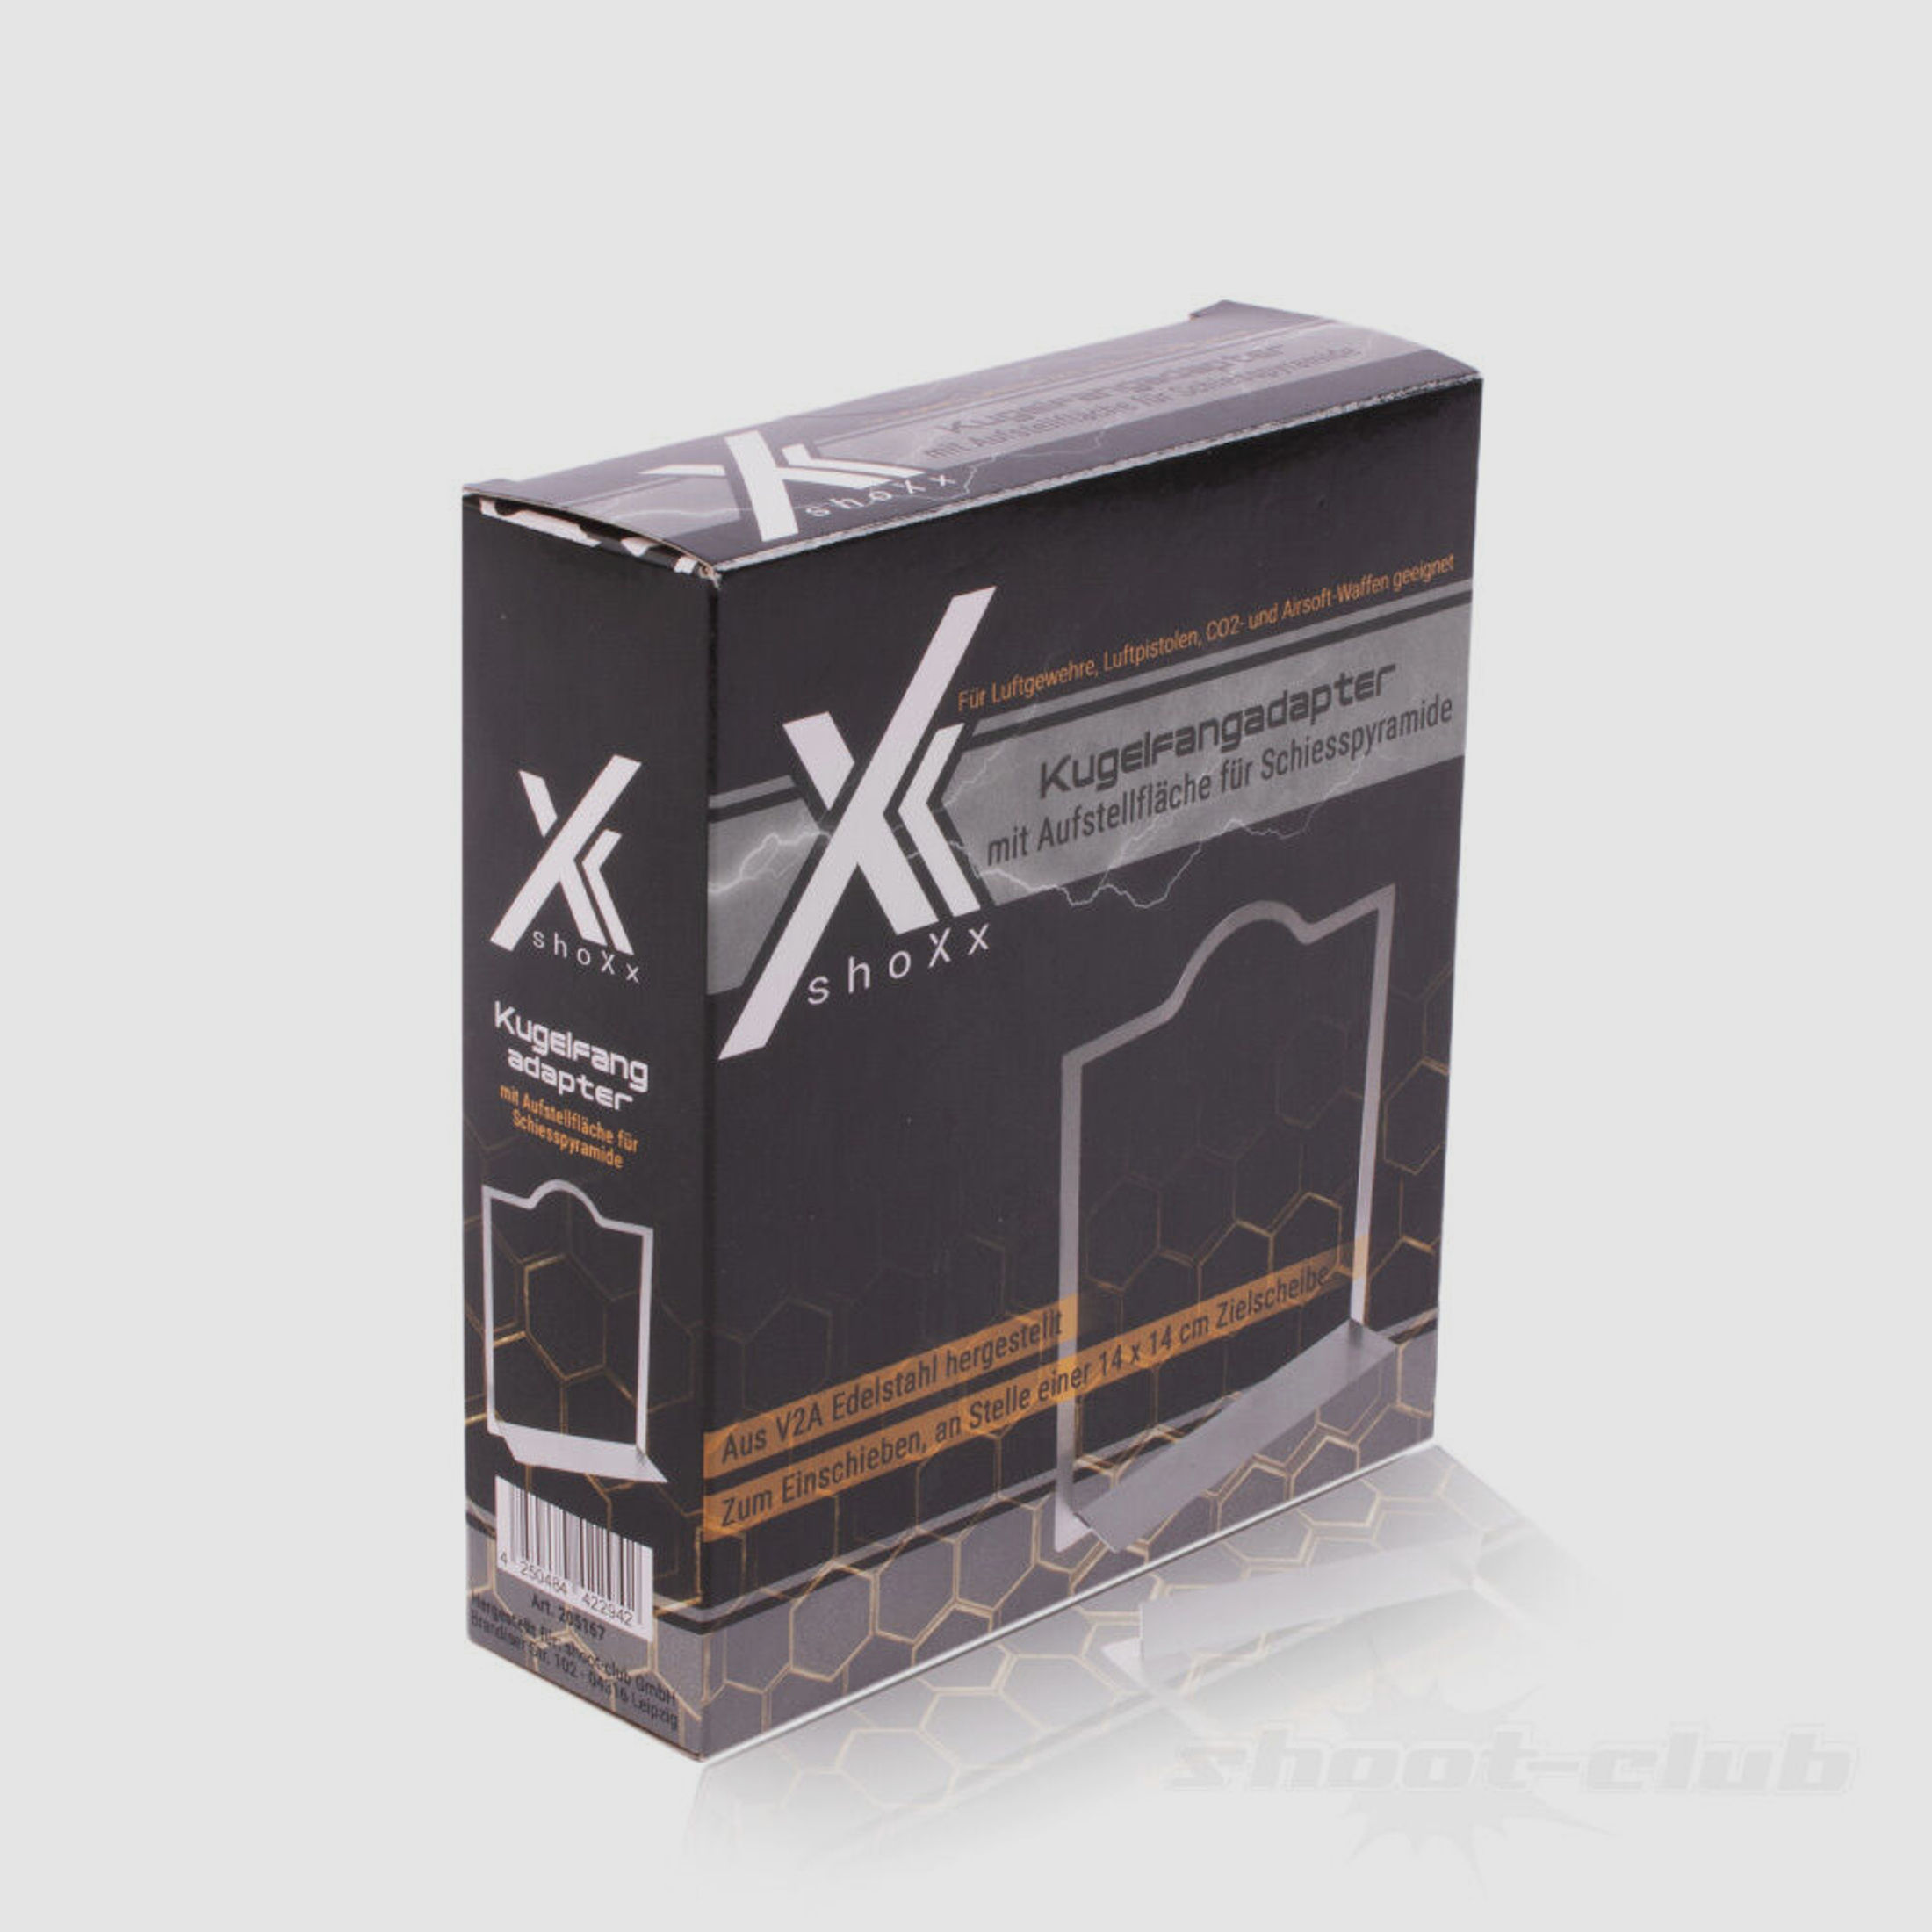 shoXx	 Adapter für Kugelfang 14x14 cm mit Aufstellfläche für